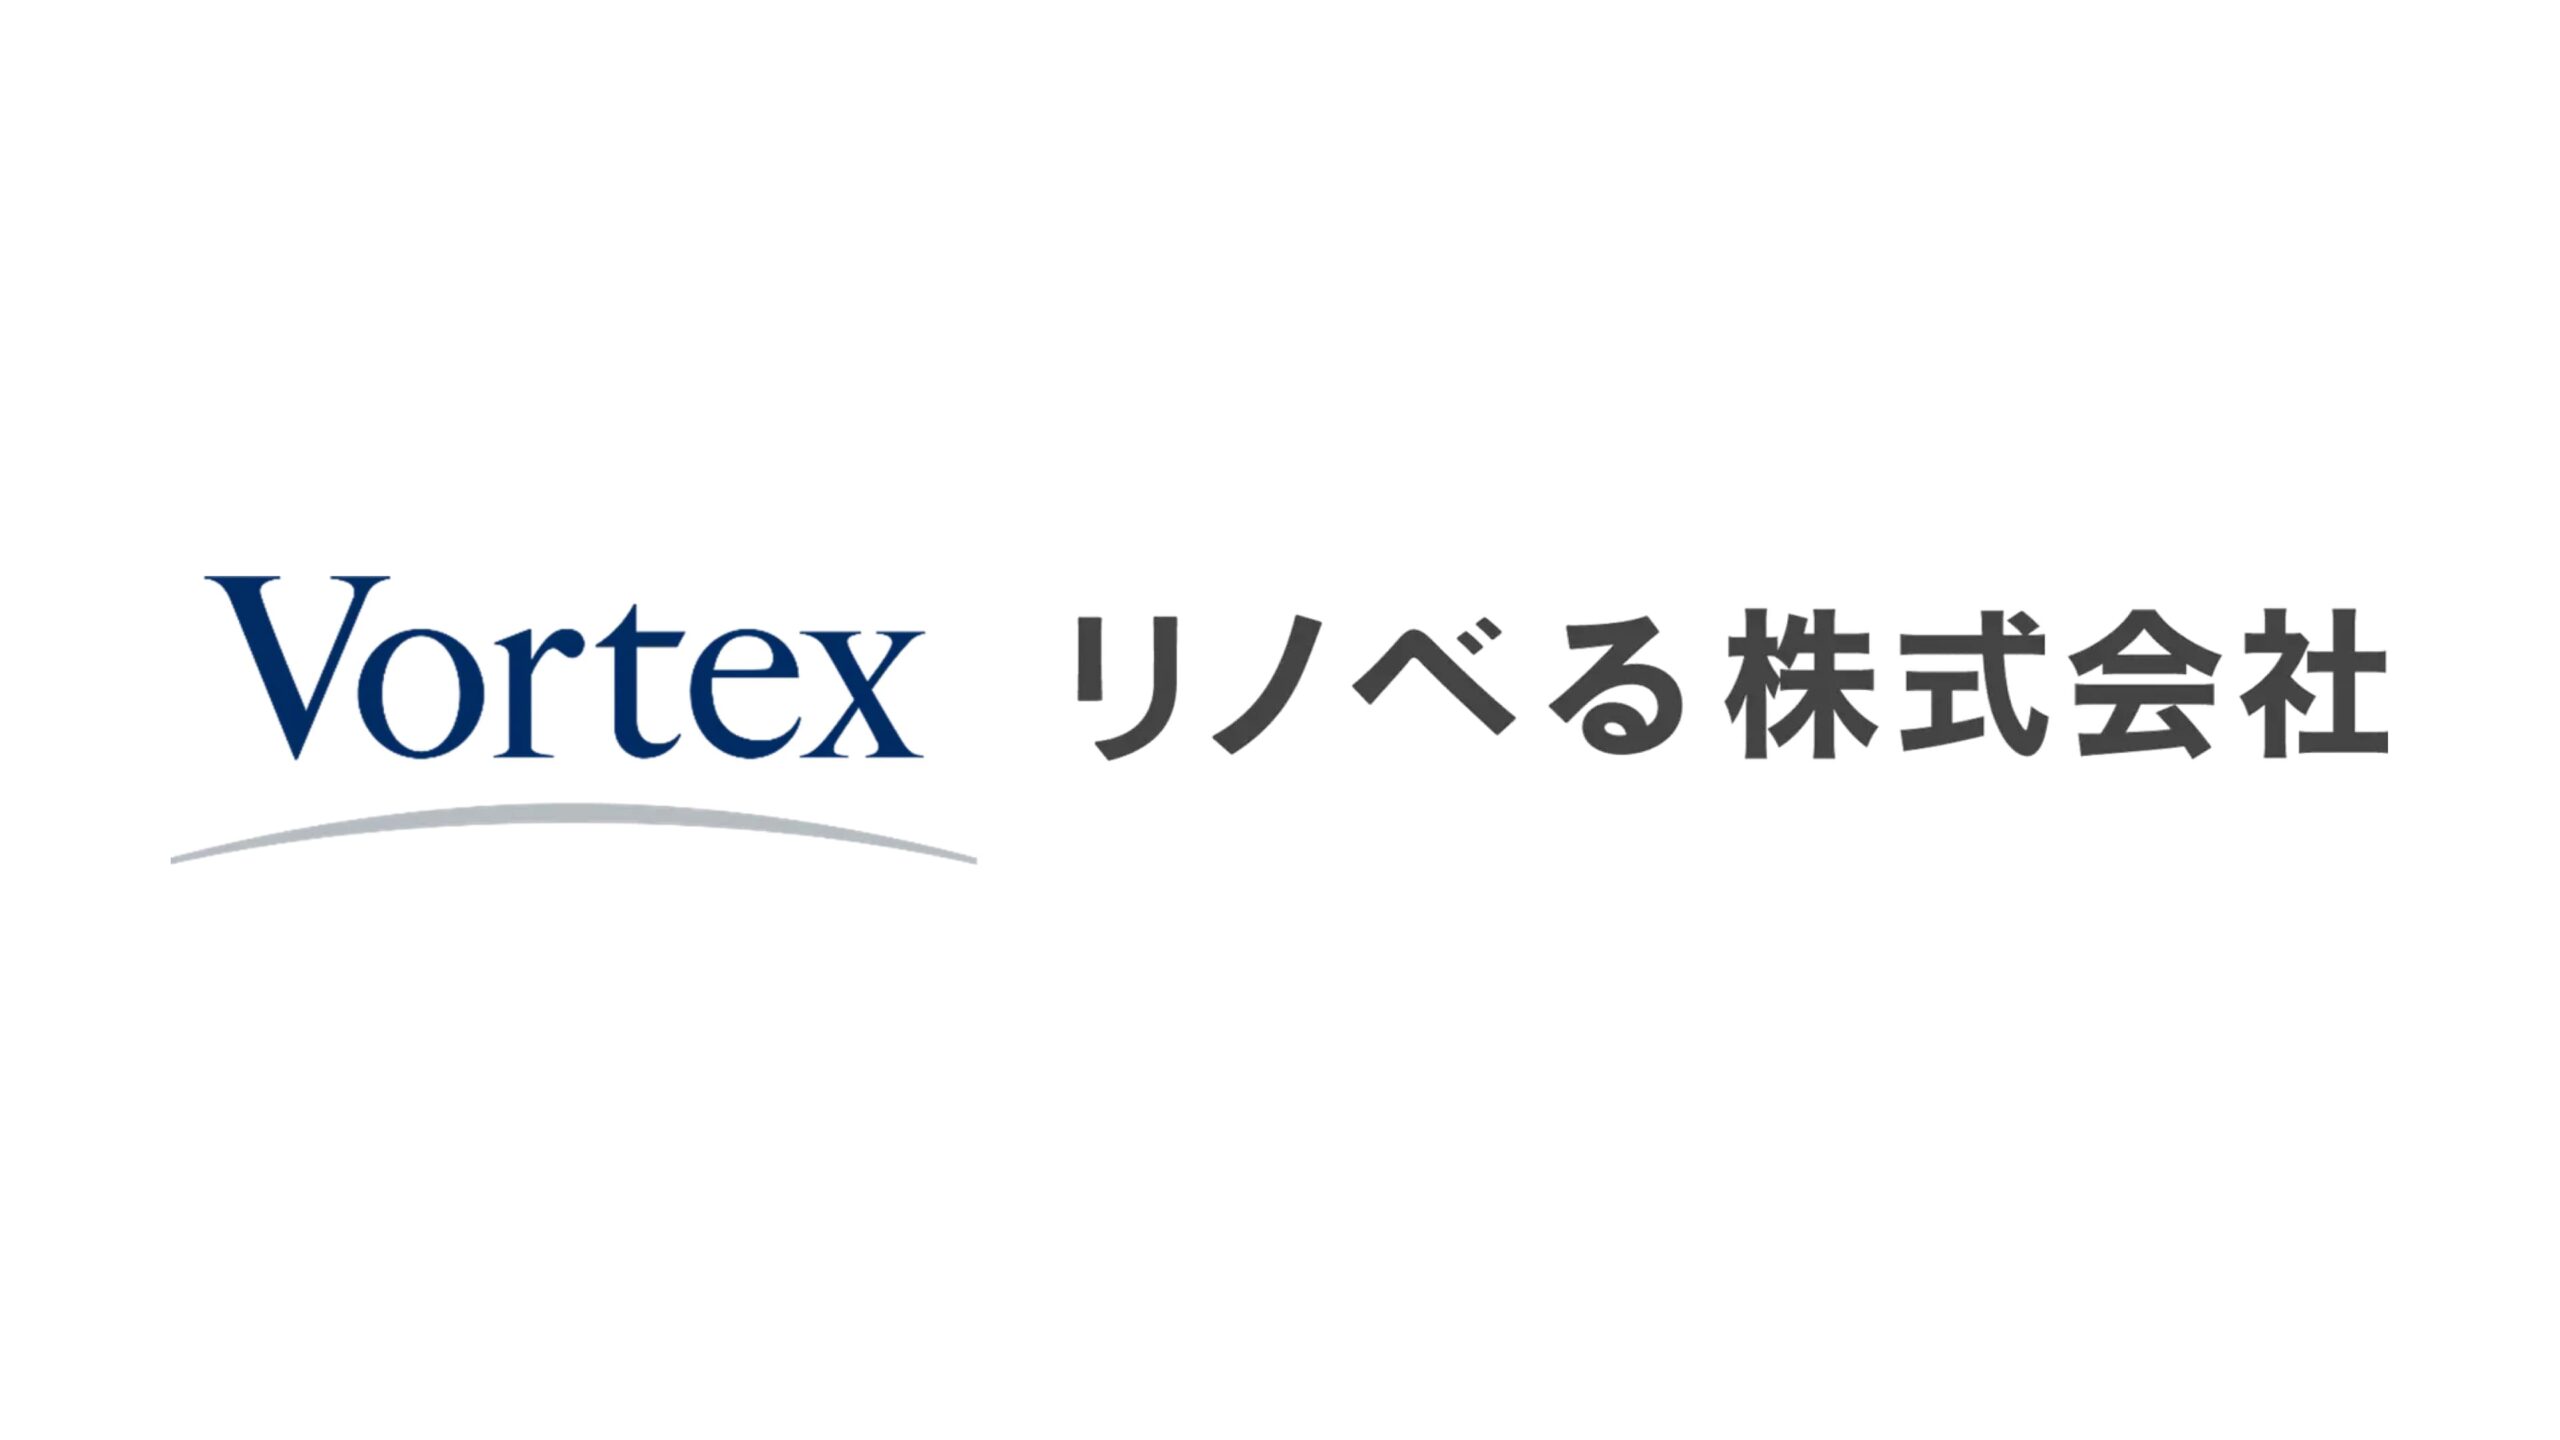 株式会社ボルテックス、リノベる株式会社への出資